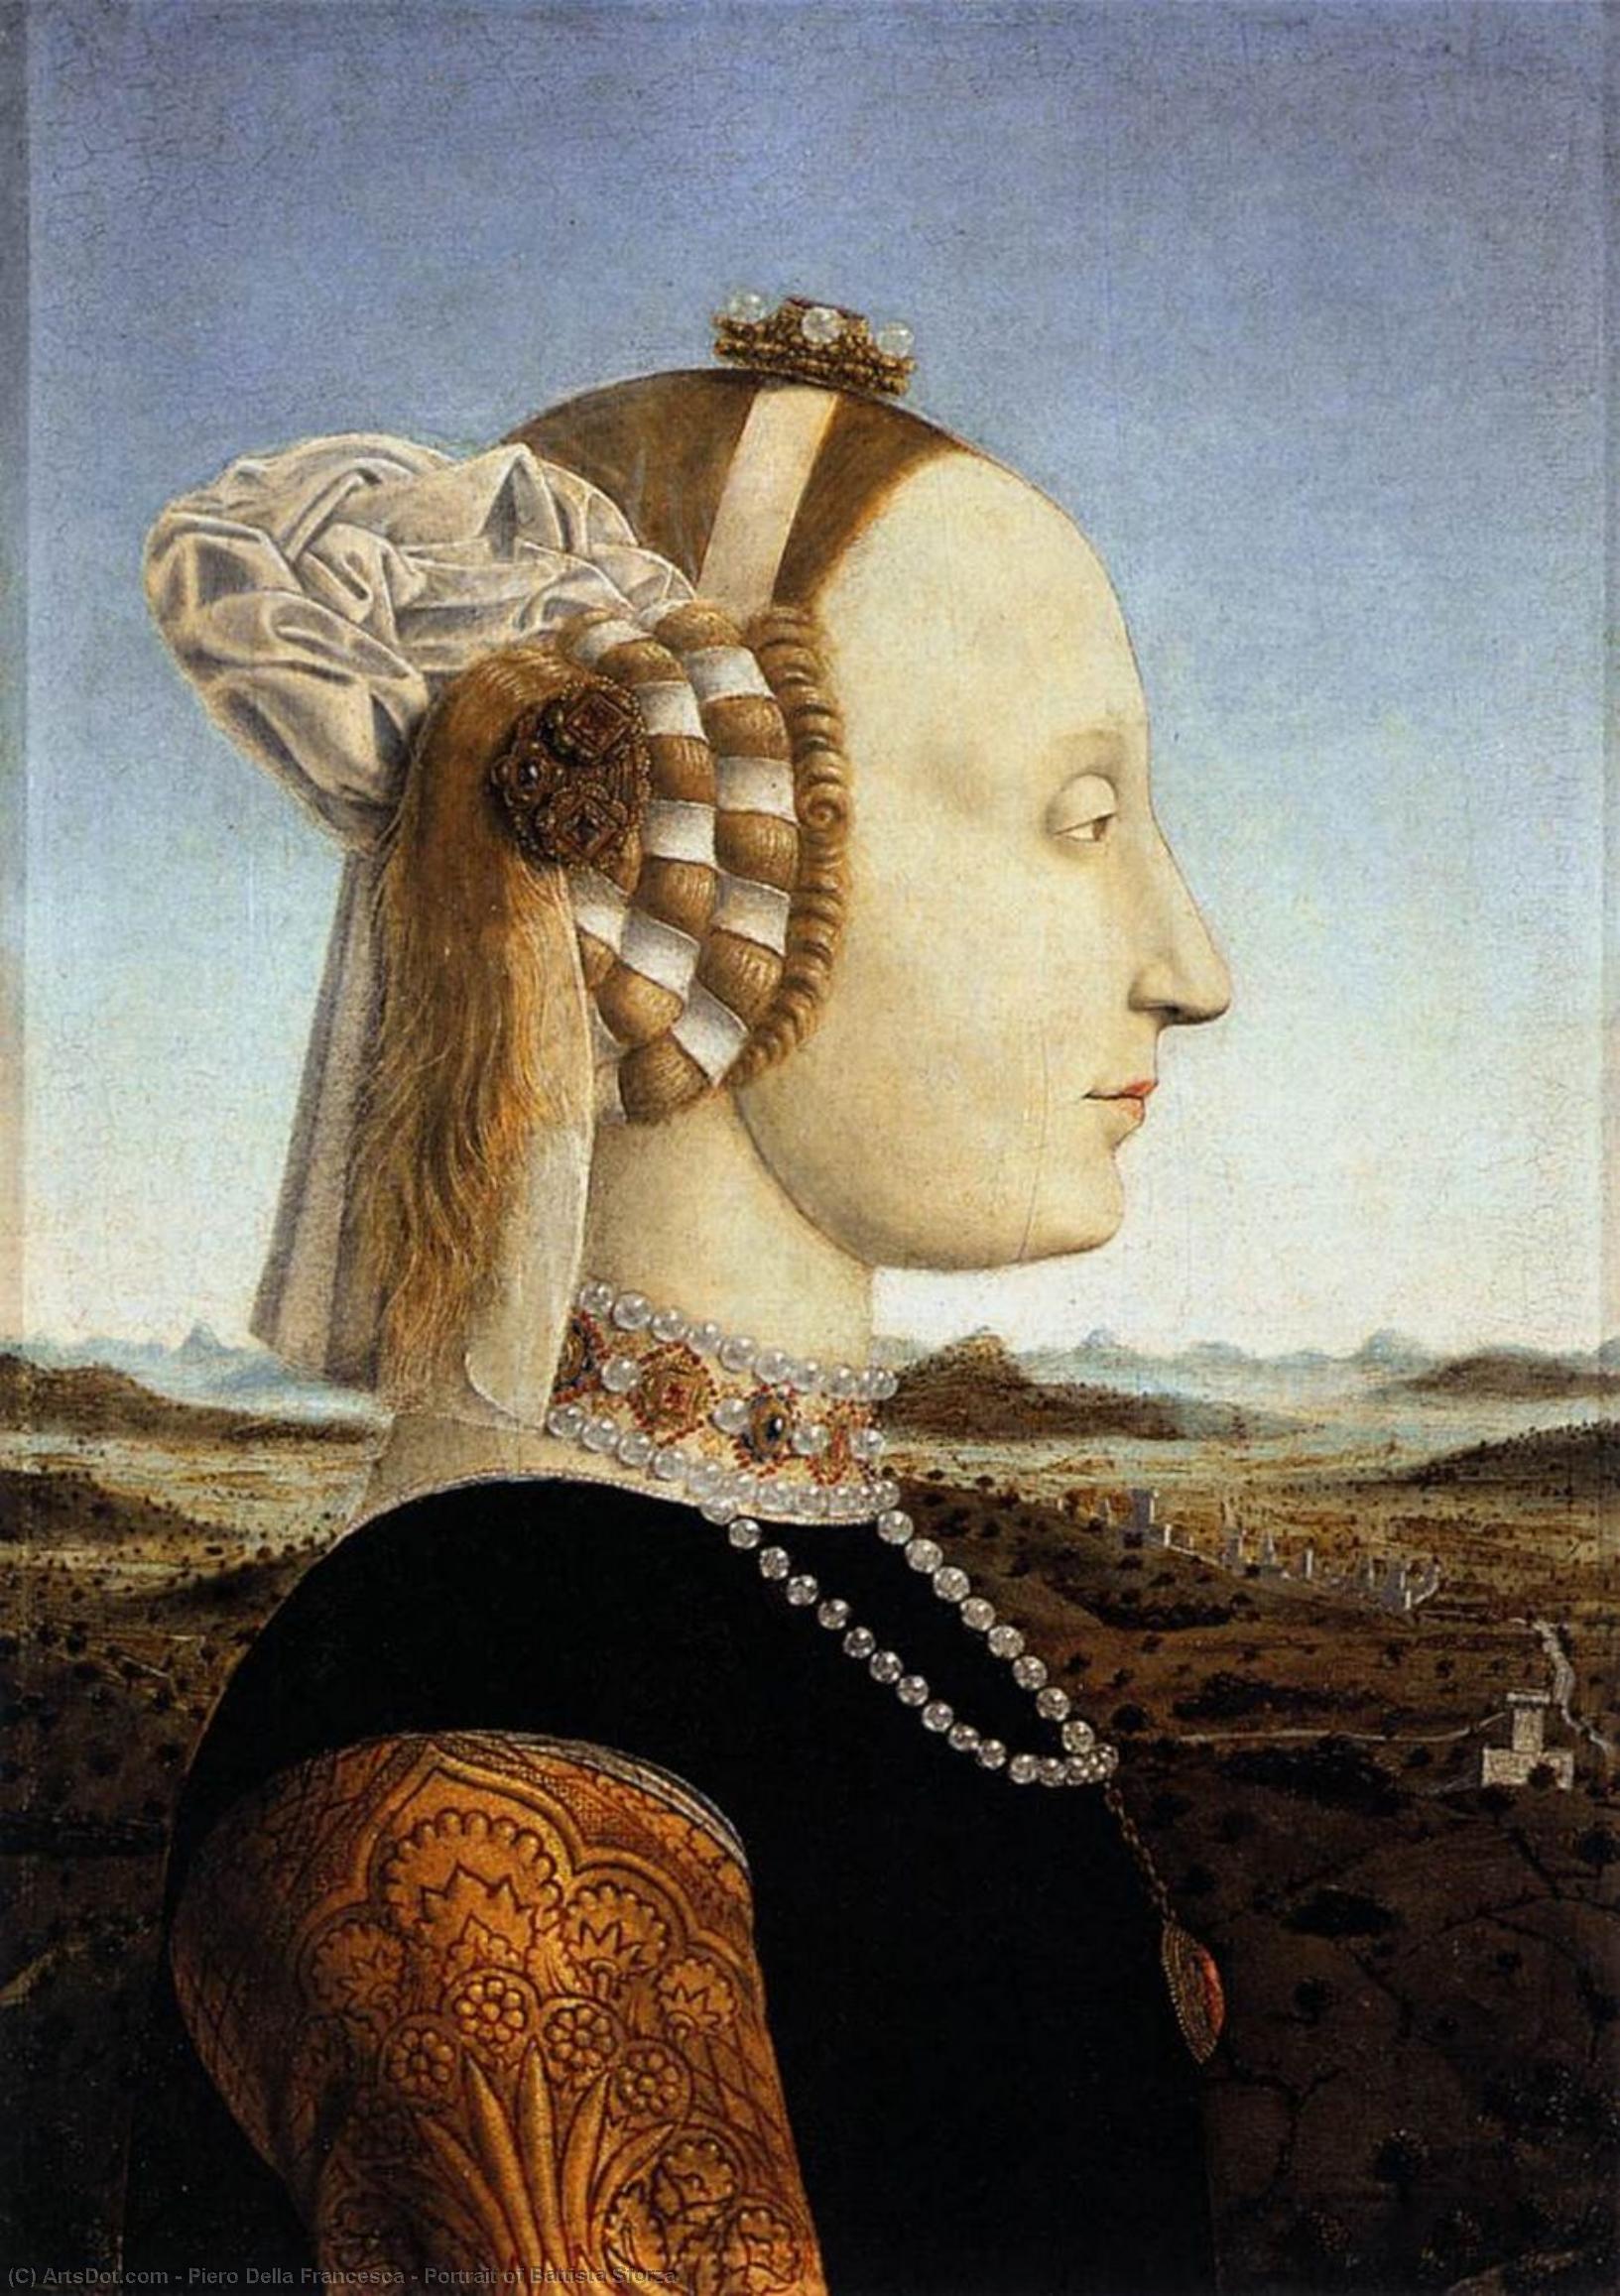 WikiOO.org - Encyclopedia of Fine Arts - Maleri, Artwork Piero Della Francesca - Portrait of Battista Sforza